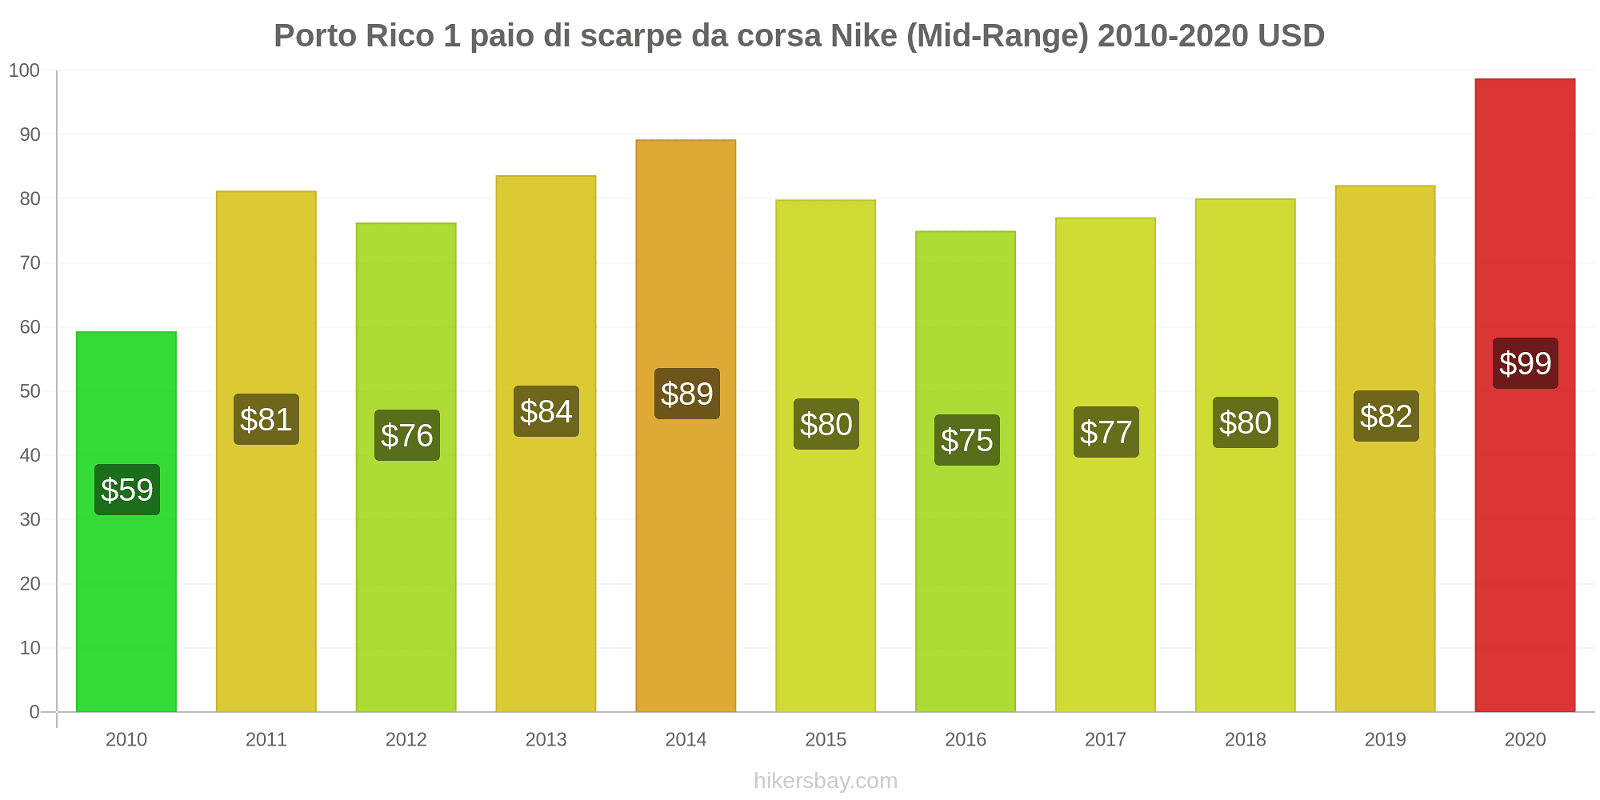 Porto Rico variazioni di prezzo 1 paio di scarpe da corsa Nike (simile) hikersbay.com